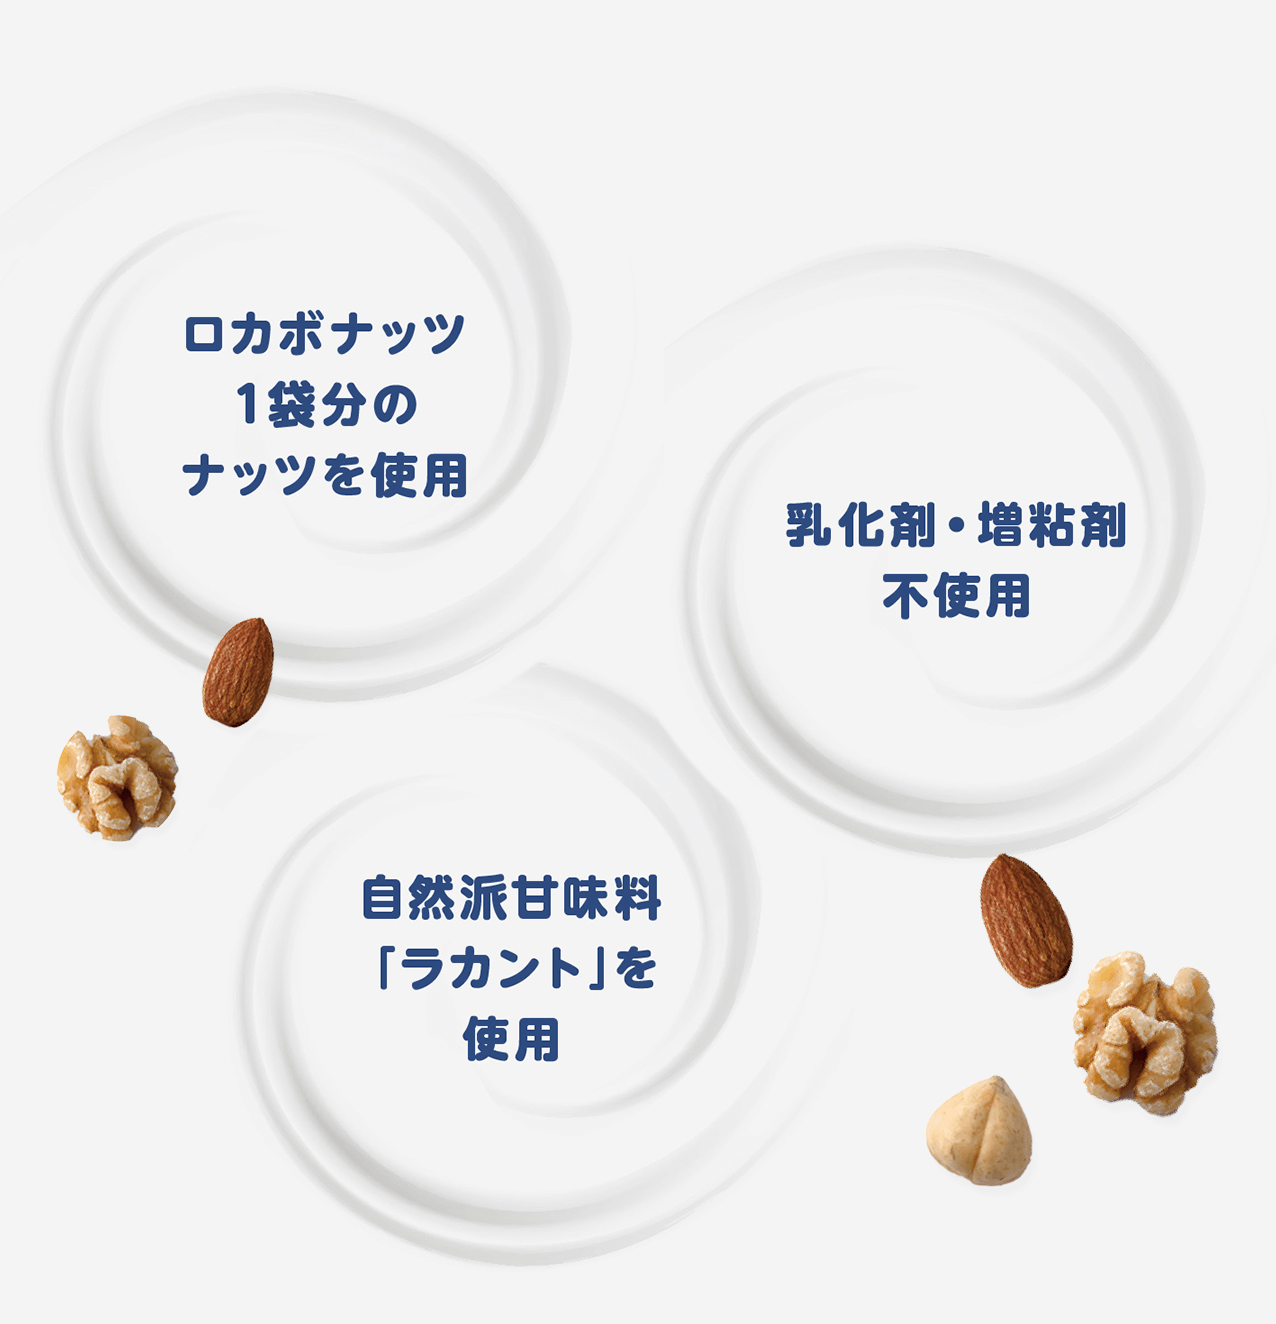 ロカボナッツ1袋分のナッツを使用 乳化剤・増粘剤不使用・自然は甘味料ラカントを使用